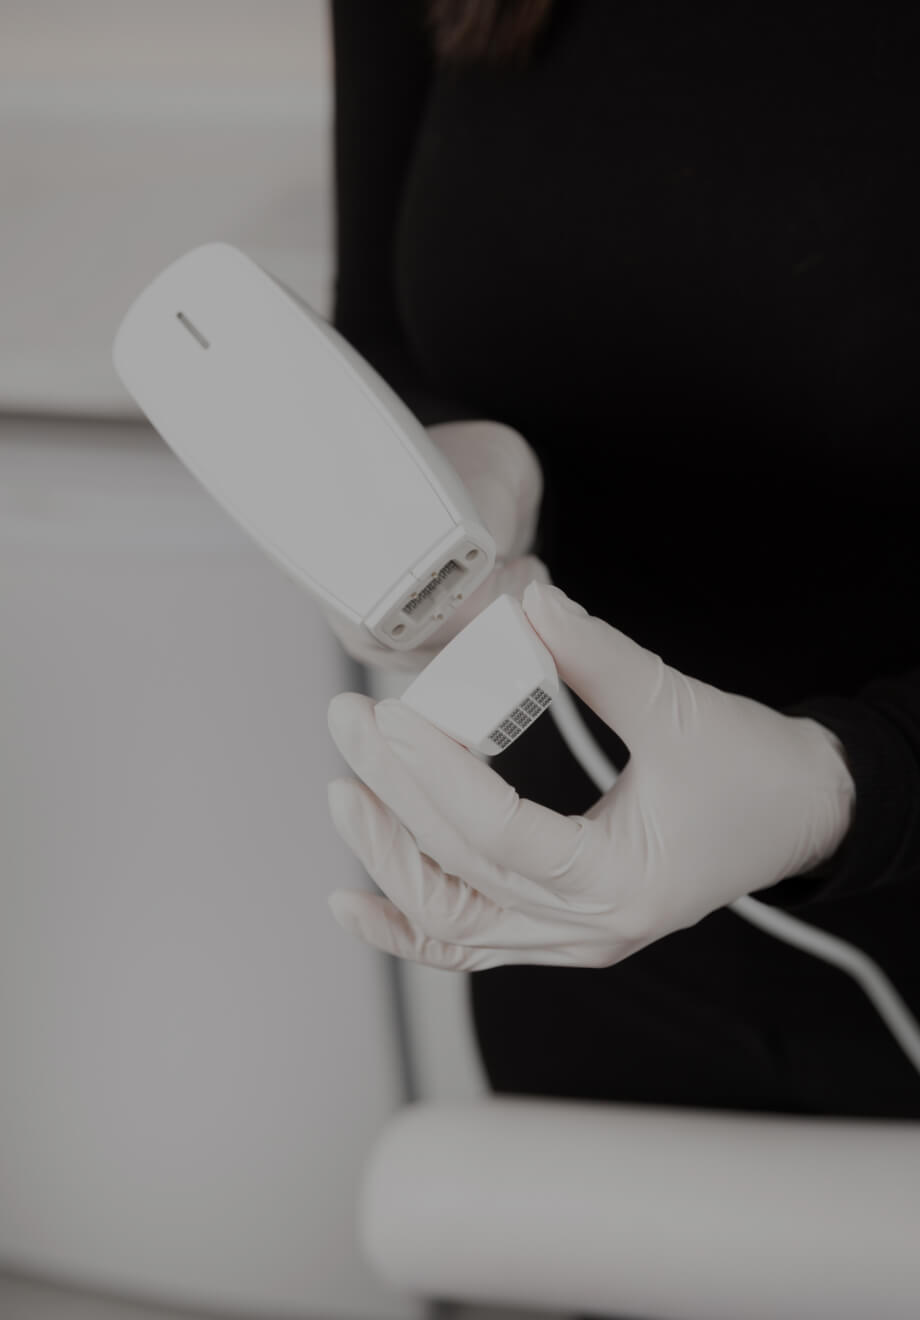 Une technicienne de la Clinique Chloé connectant un embout Venus Viva à la pièce à main de l'appareil médico-esthétique